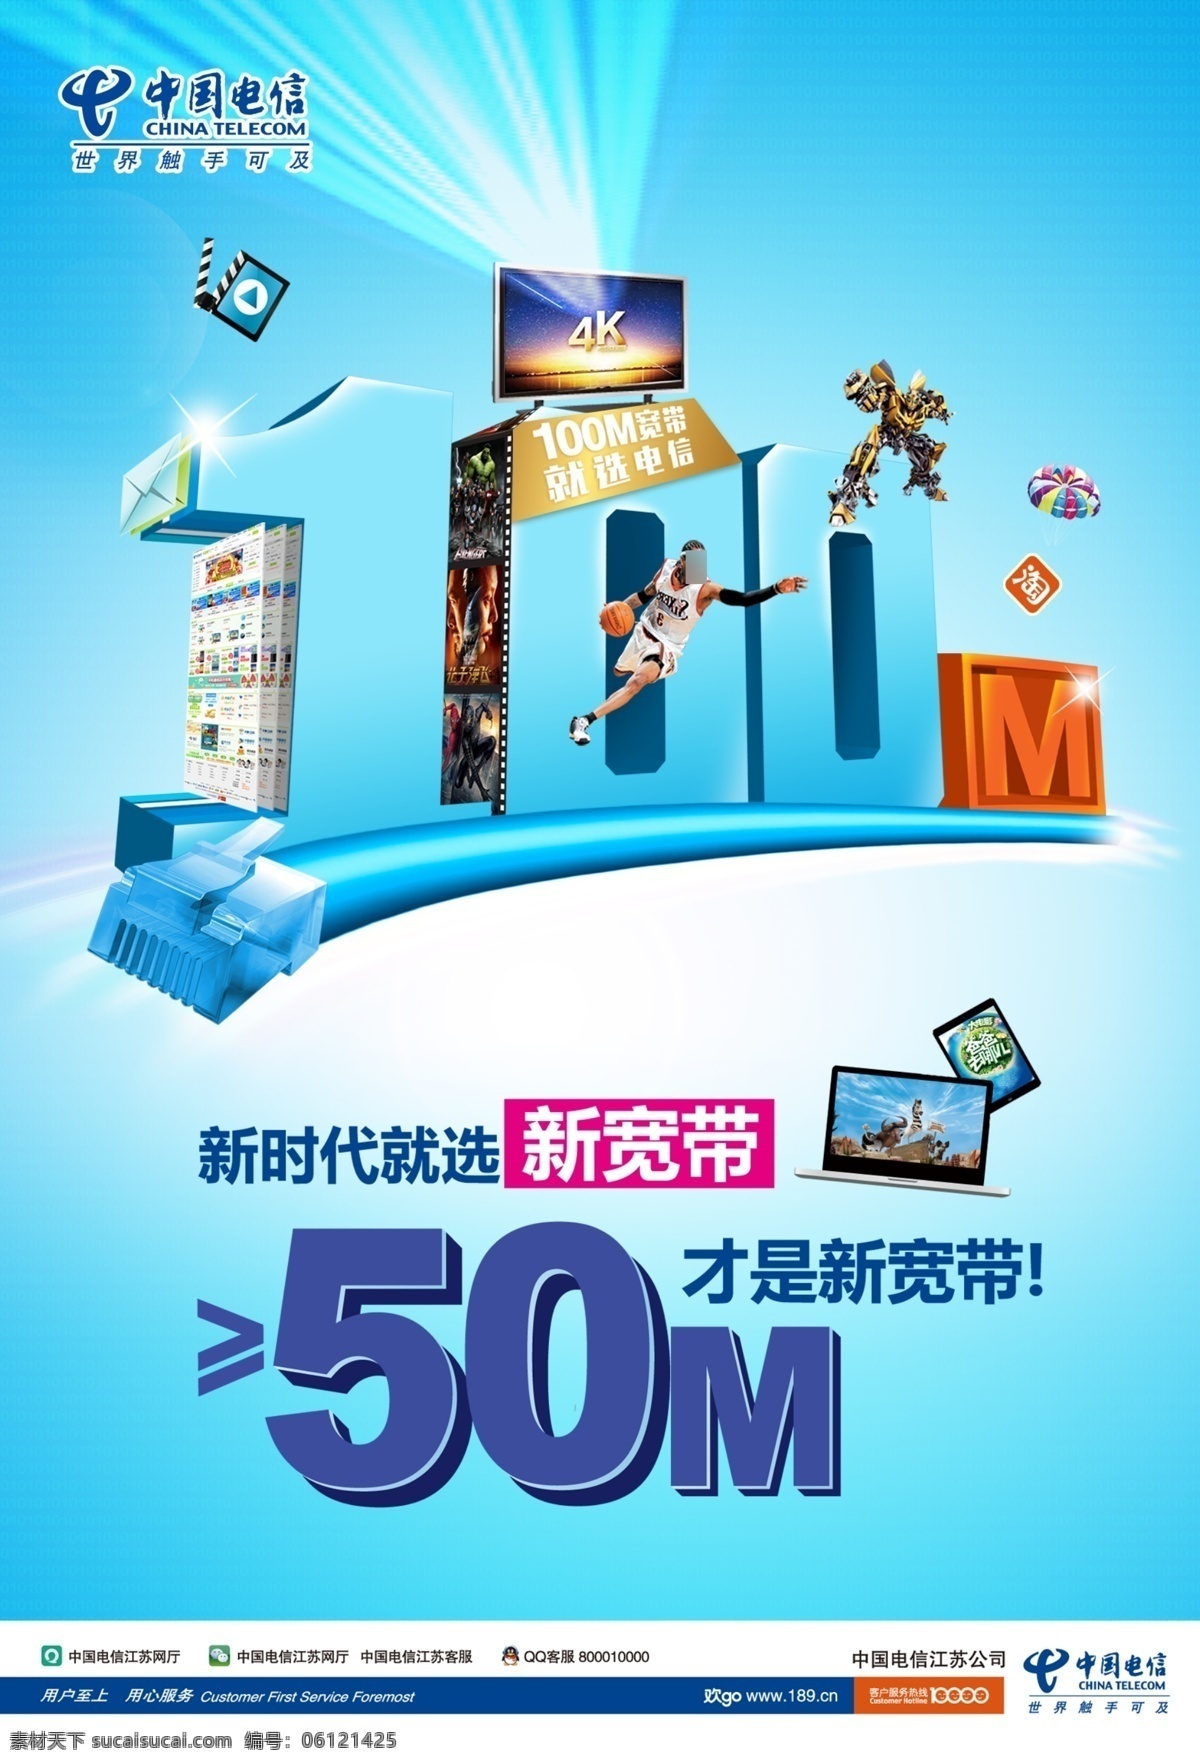 电信宽带海报 中国 电信宽带 海报矢量素材 宽带海报 电信 礼物 cdr格式 平面广告